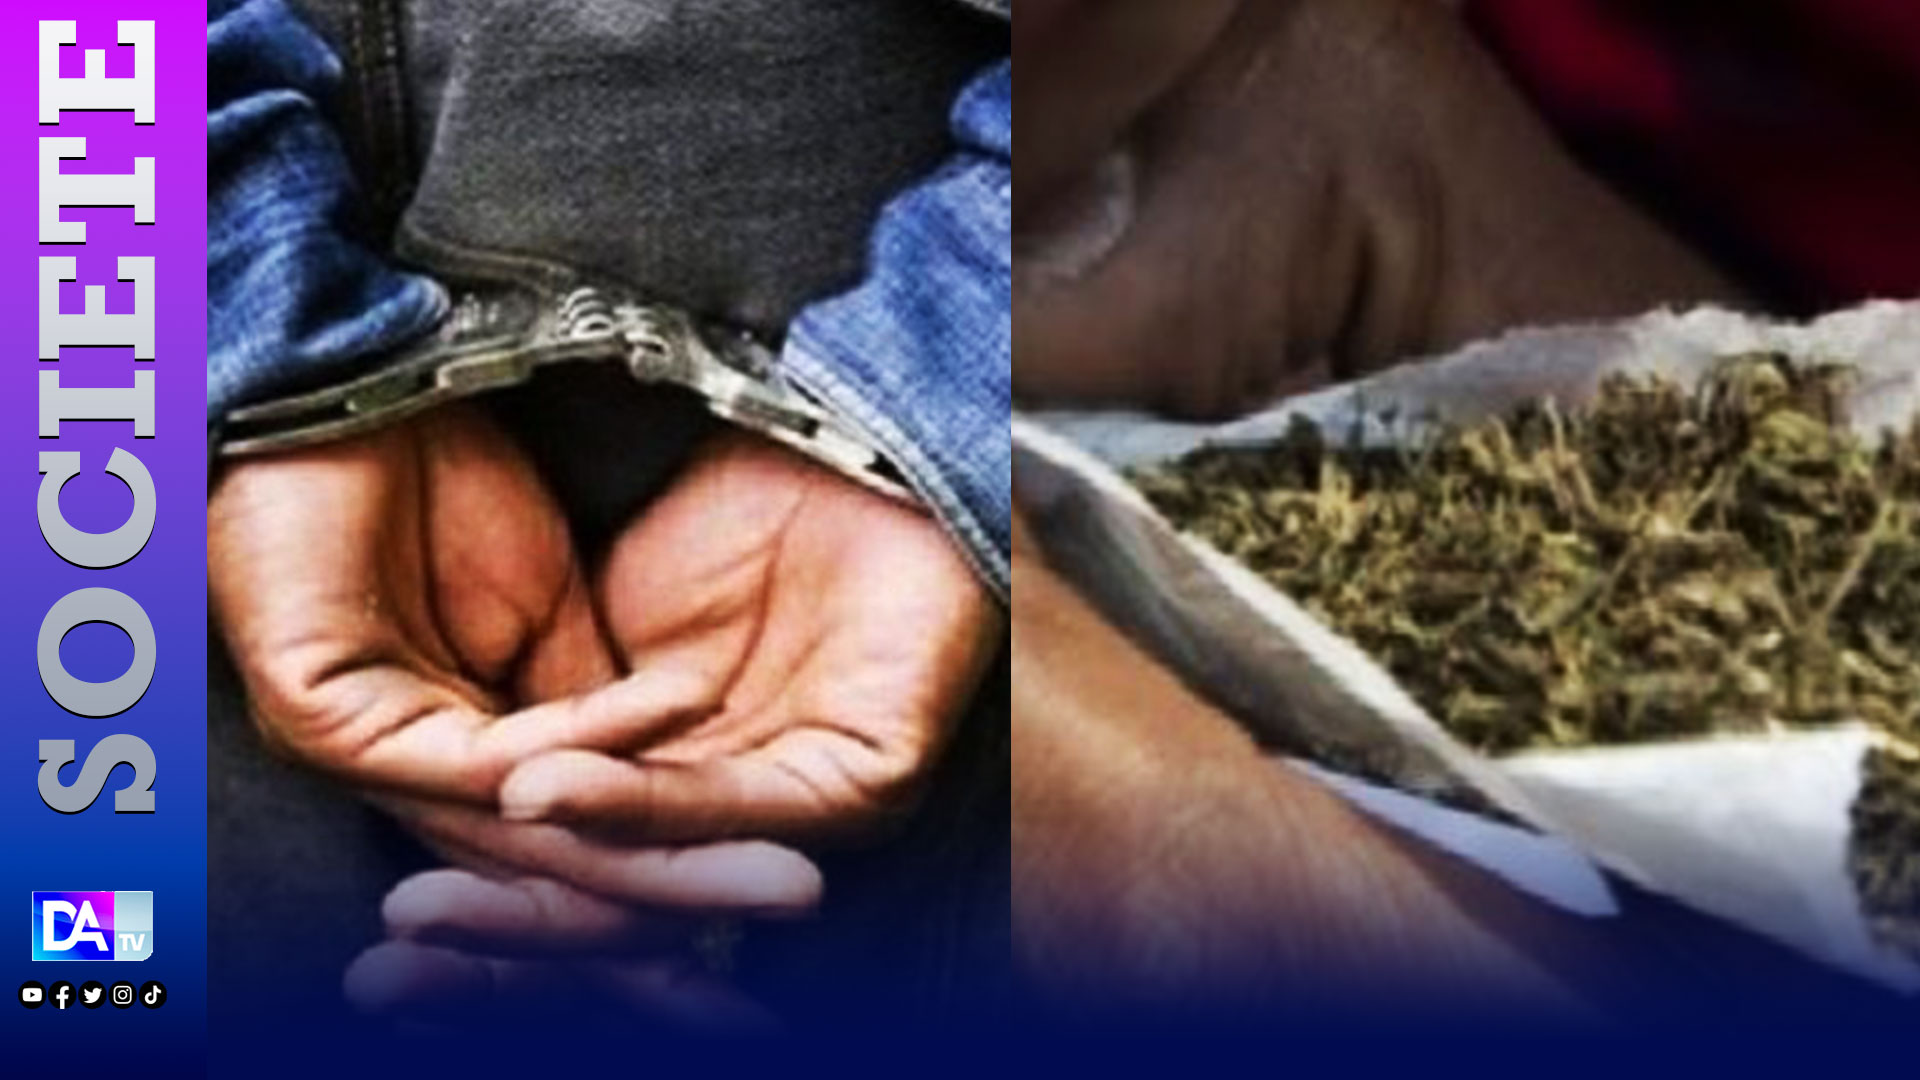 Détention de drogue : pris avec 50 grammes de chanvre indien, le prévenu M. Sy minimise « Lólu beuriwul ».